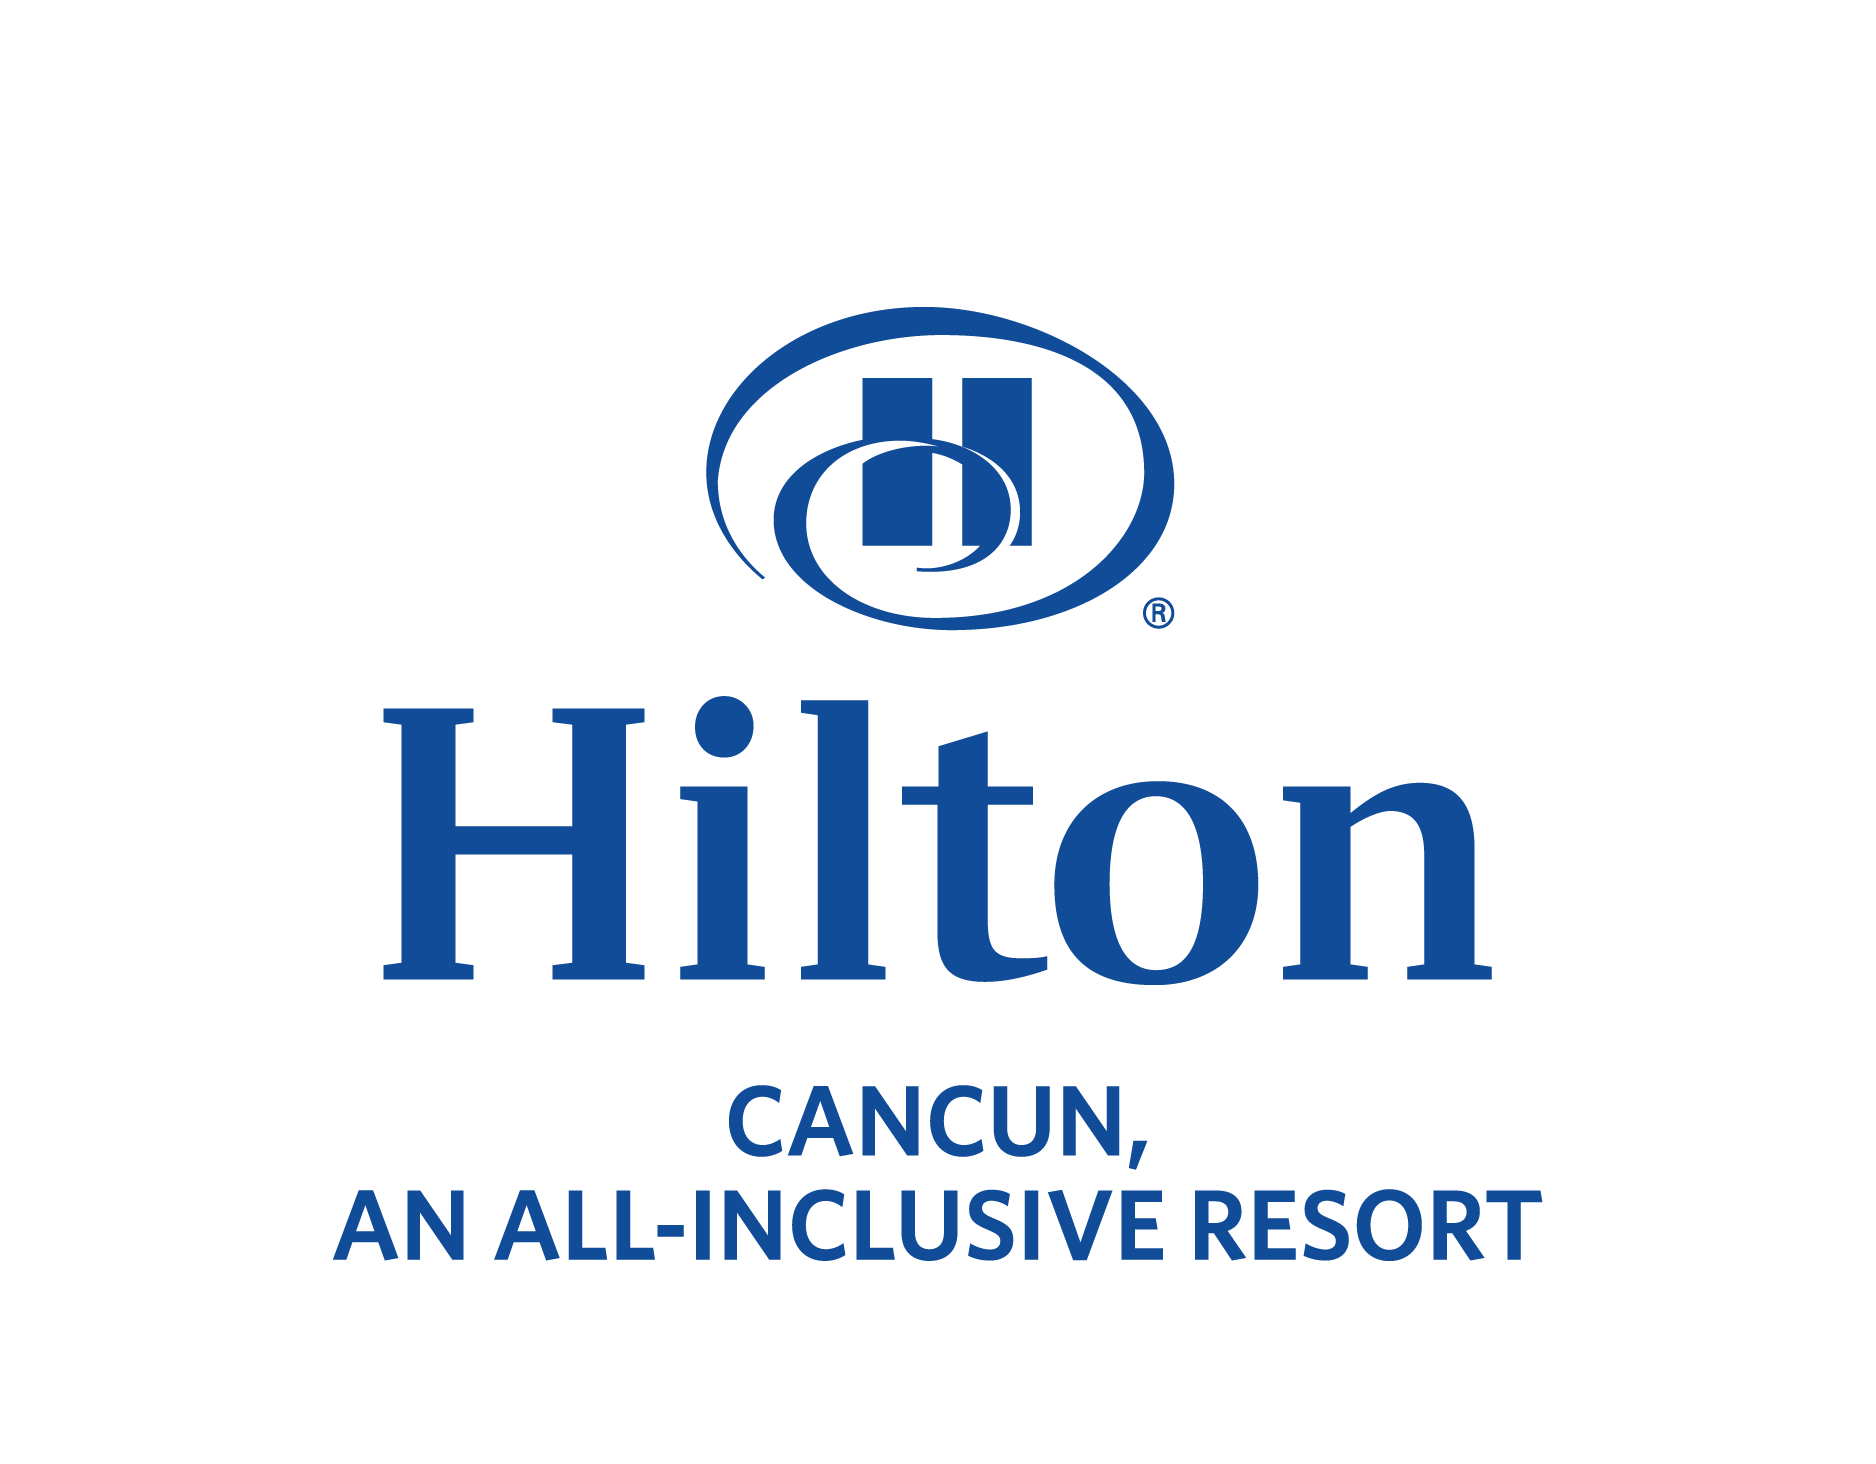 Hilton Cancun logo